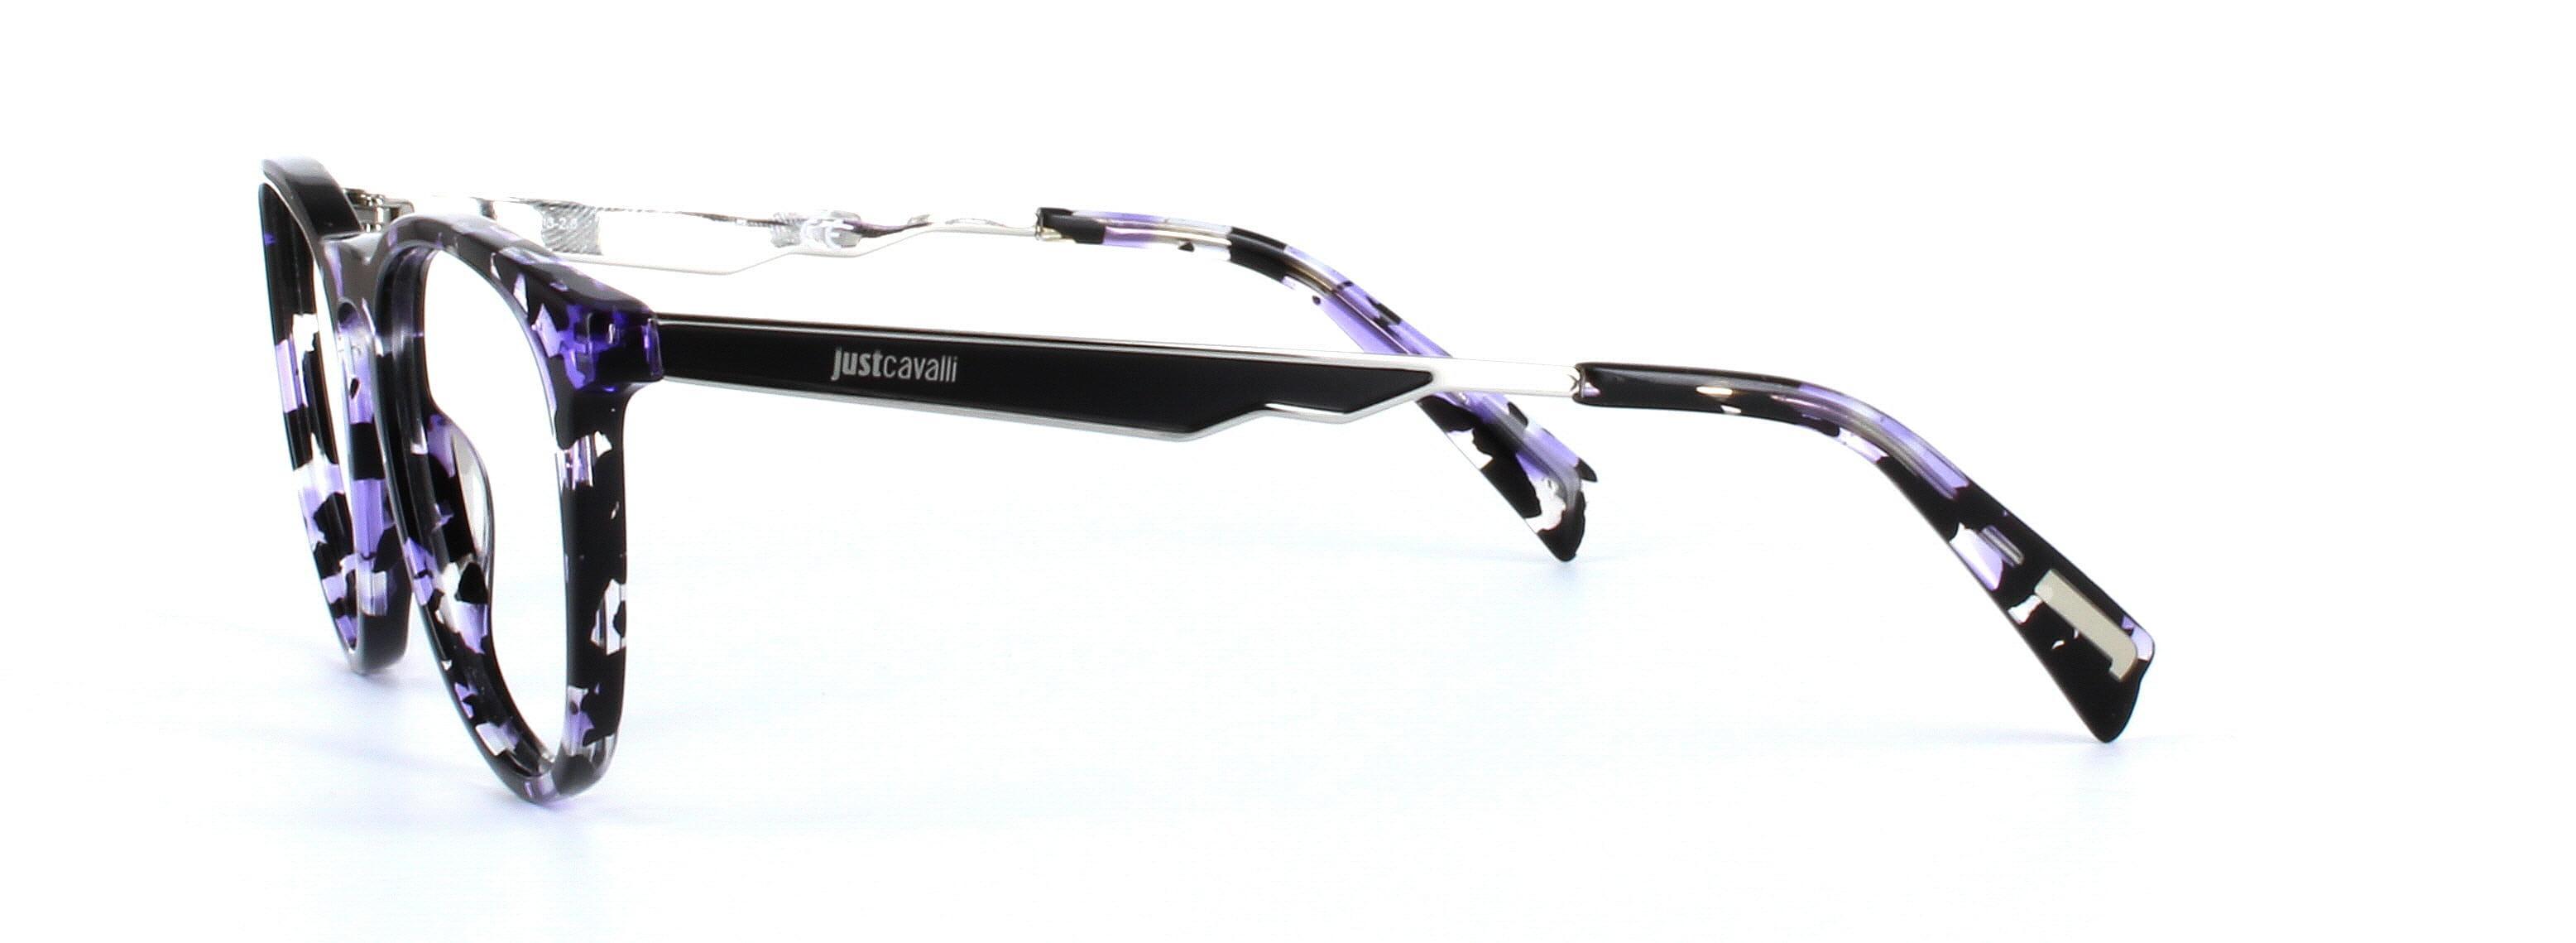 JUST CAVALLI (JC0879-055) Black and Purple Full Rim Round Acetate Glasses - Image View 2